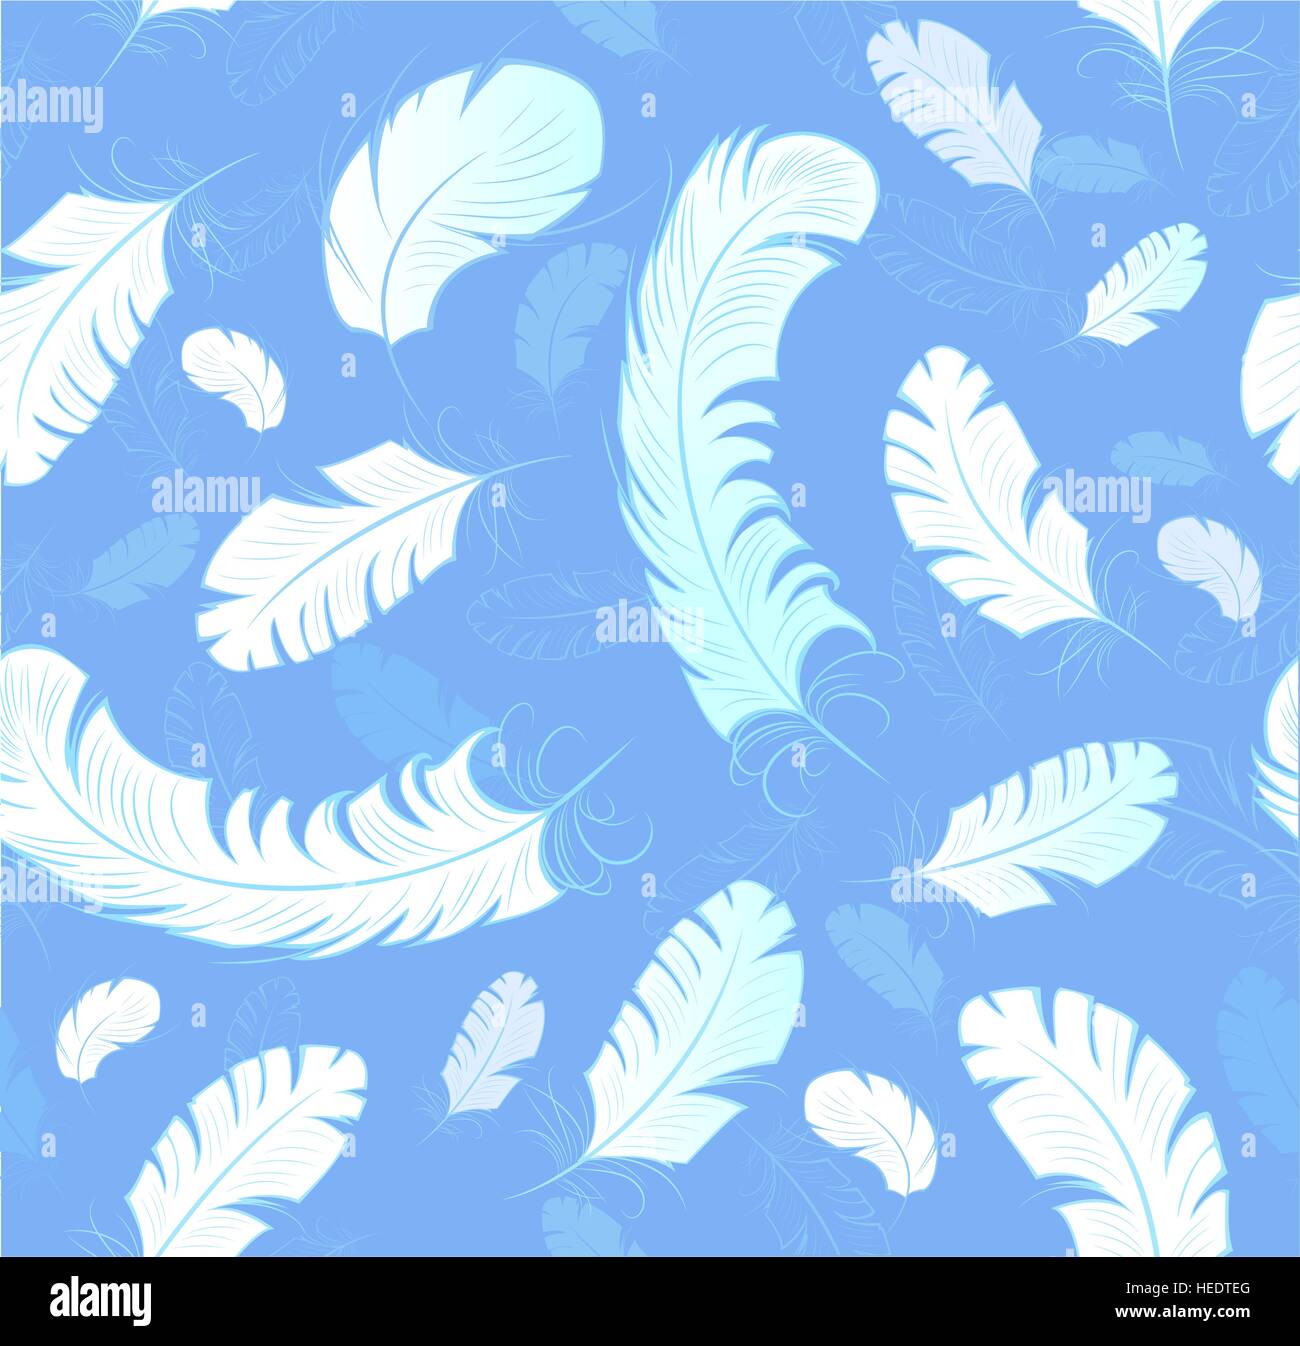 nahtloses Muster weiß, kunstvoll bemalte, stilisierte Federn mit dünnen schöne Konturen auf einem hellblauen Hintergrund. Stock Vektor